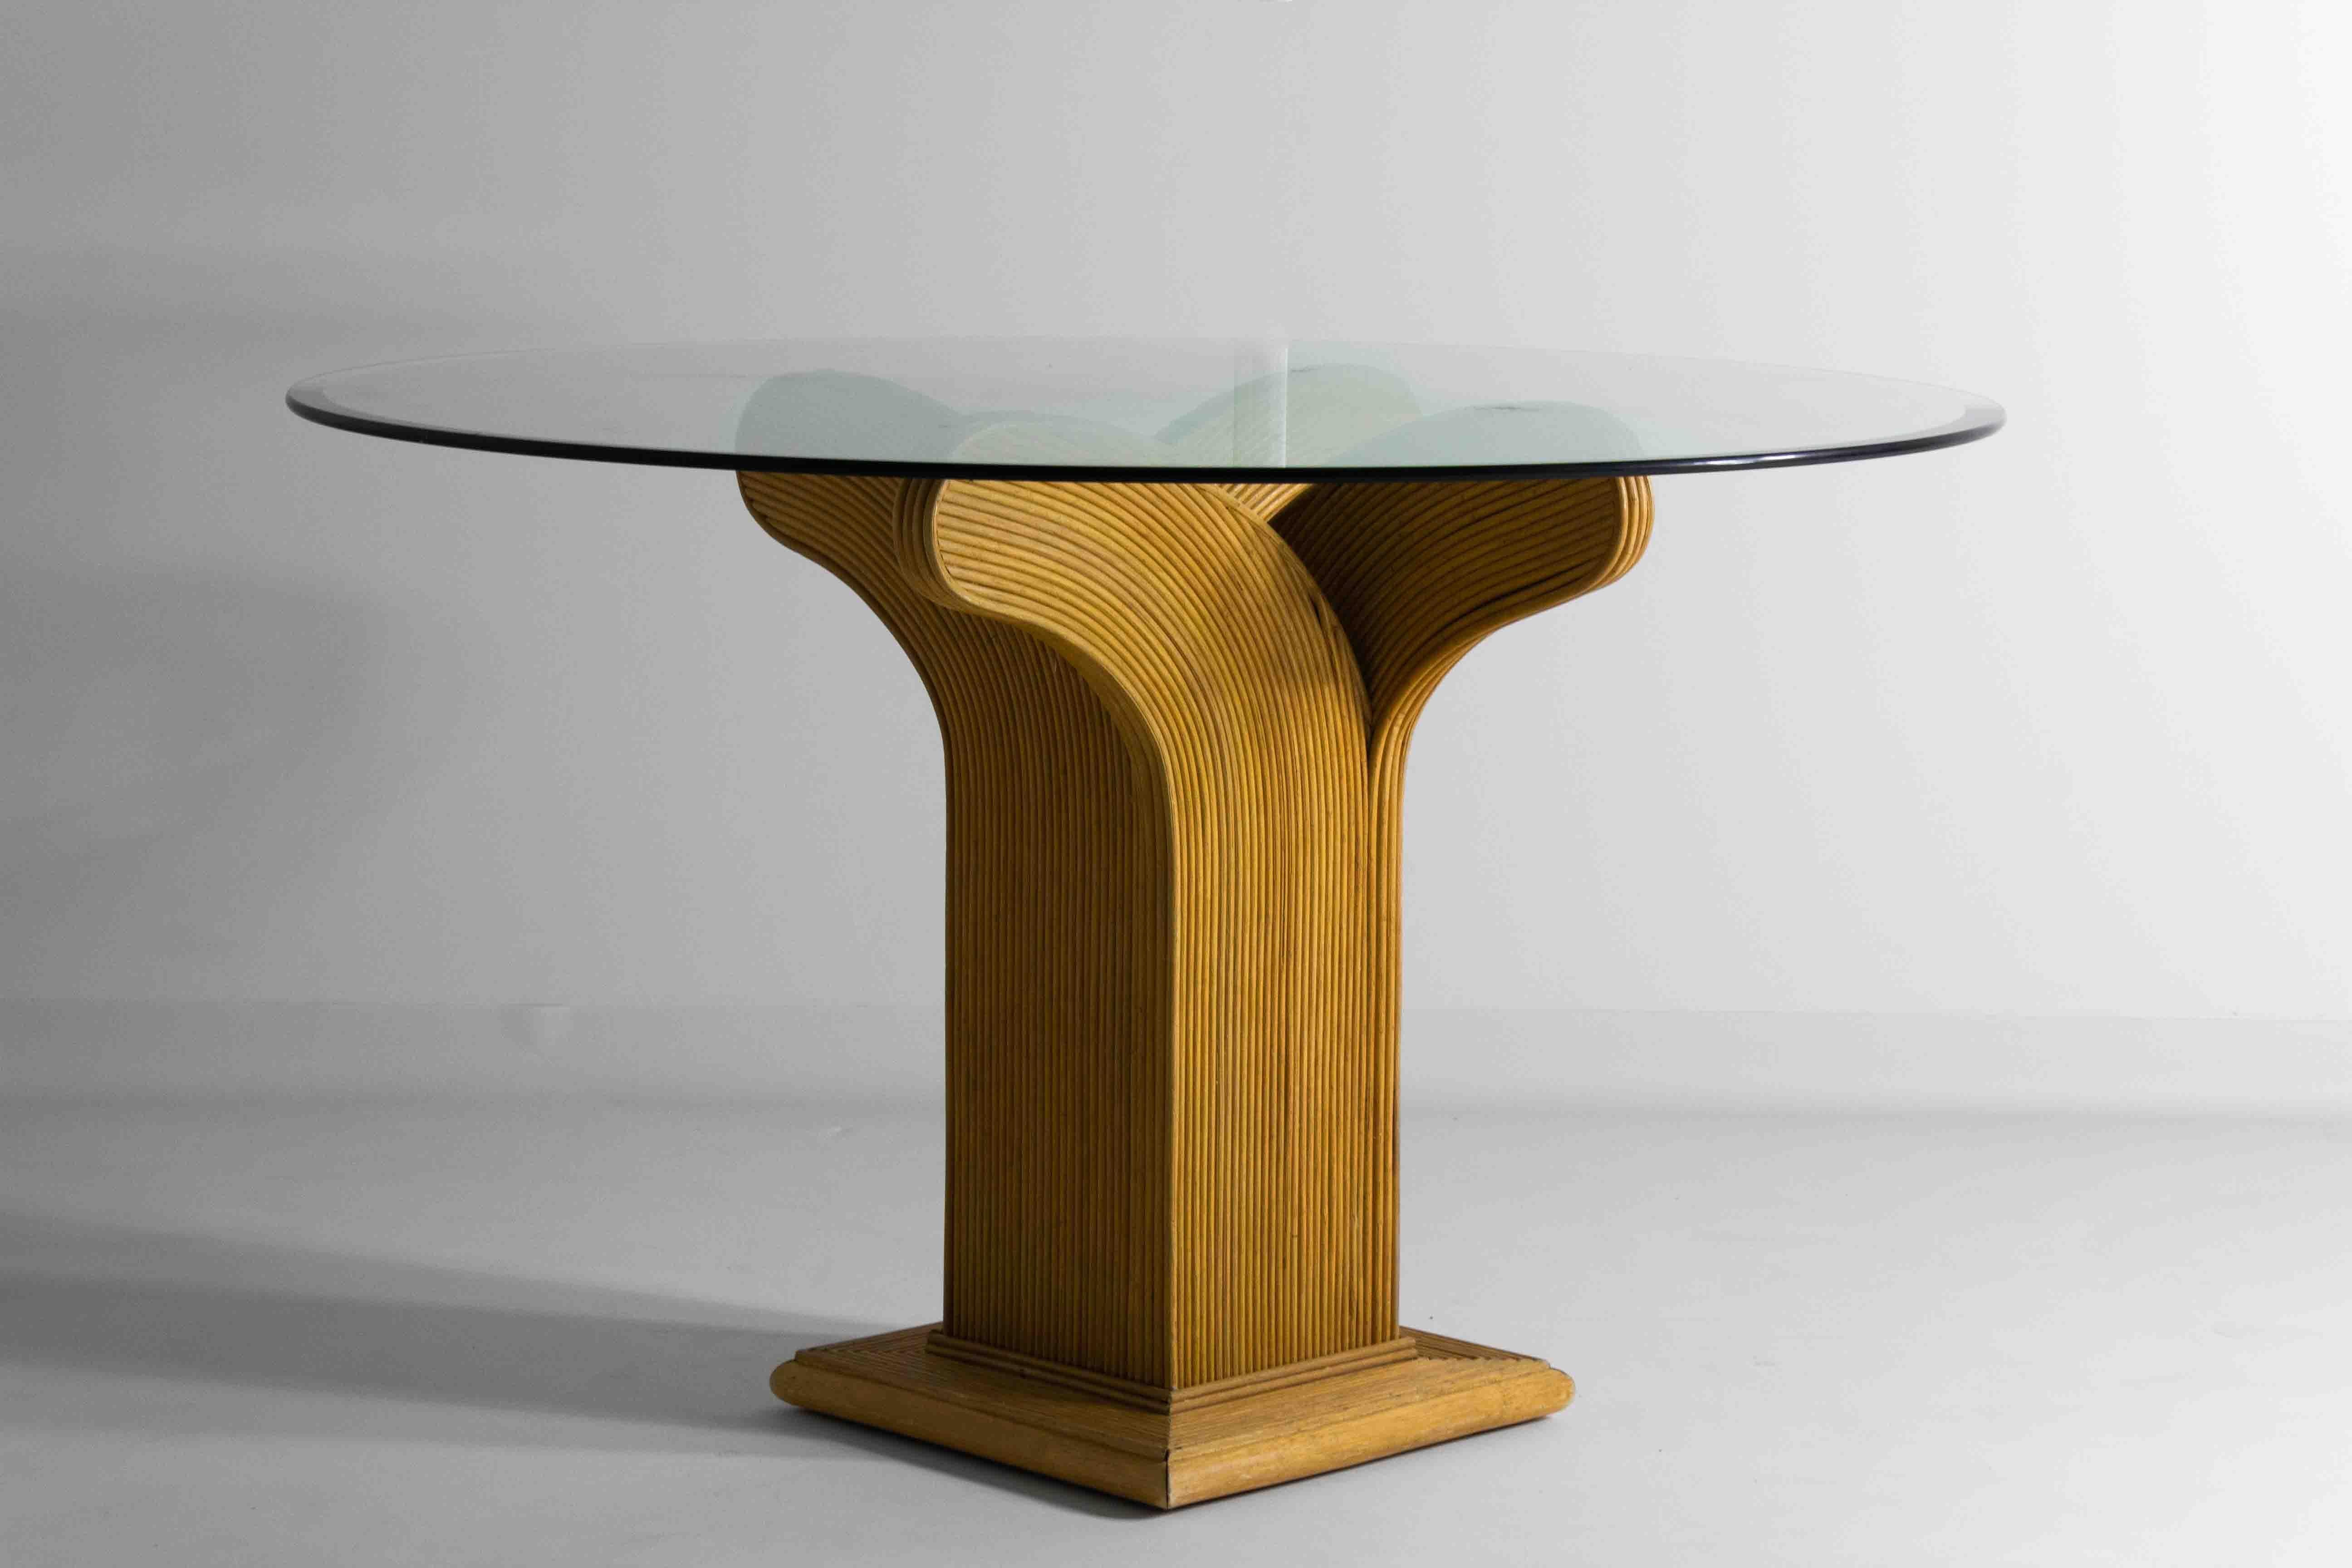 Cette table de salle à manger ronde, fabriquée en bambou et en rotin par Vivai del Sud, met en valeur le travail renommé de Maurizio Mariani et Giusto Puri Purini. Ces designers se sont fait connaître dans les années 1970 en Italie pour leurs